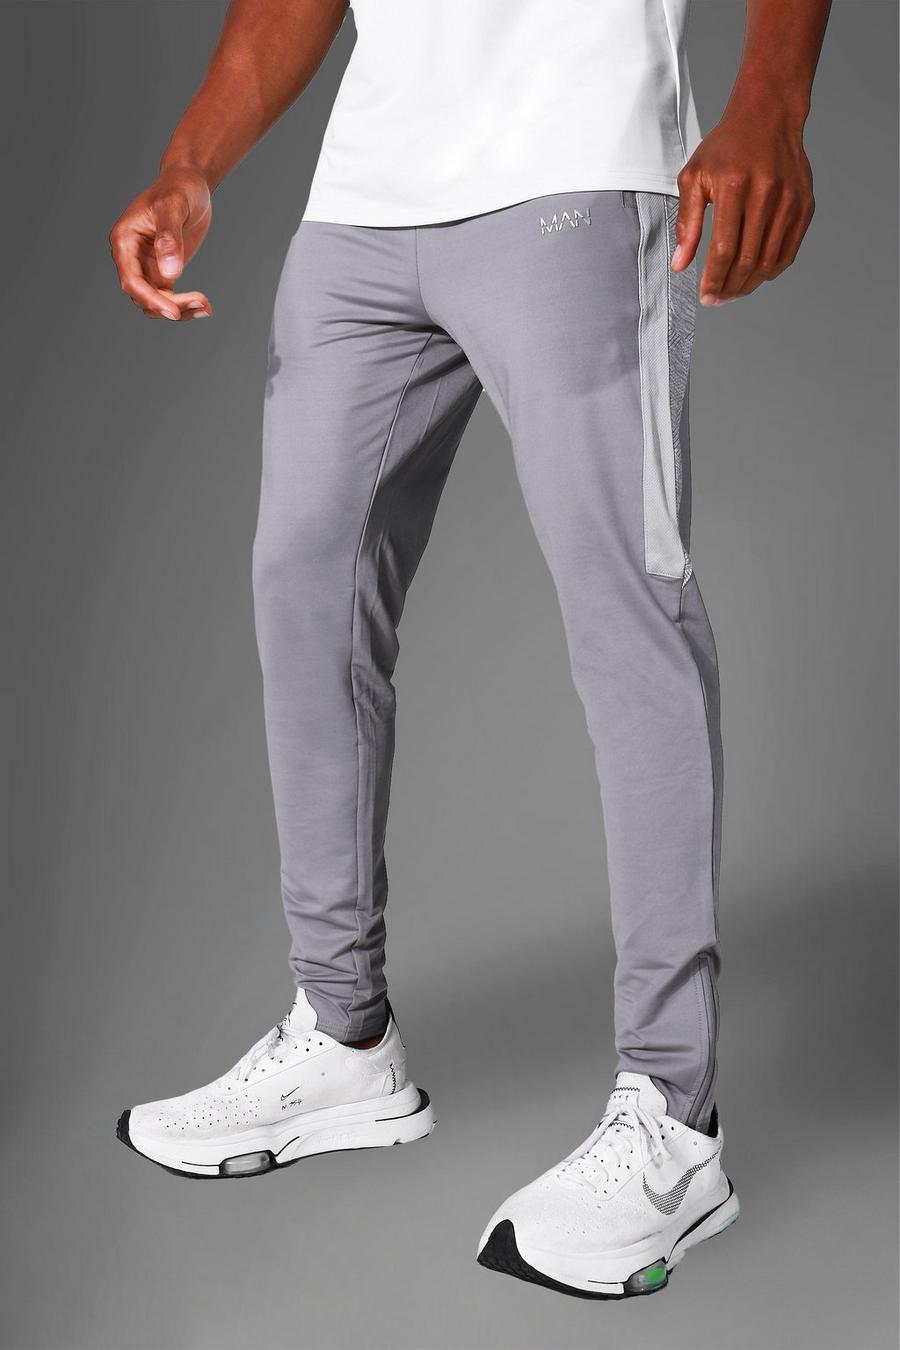 אפור grigio מכנסי טרנינג ספורטיביים לאימונים עם פאנל ודוגמה מסדרת Man